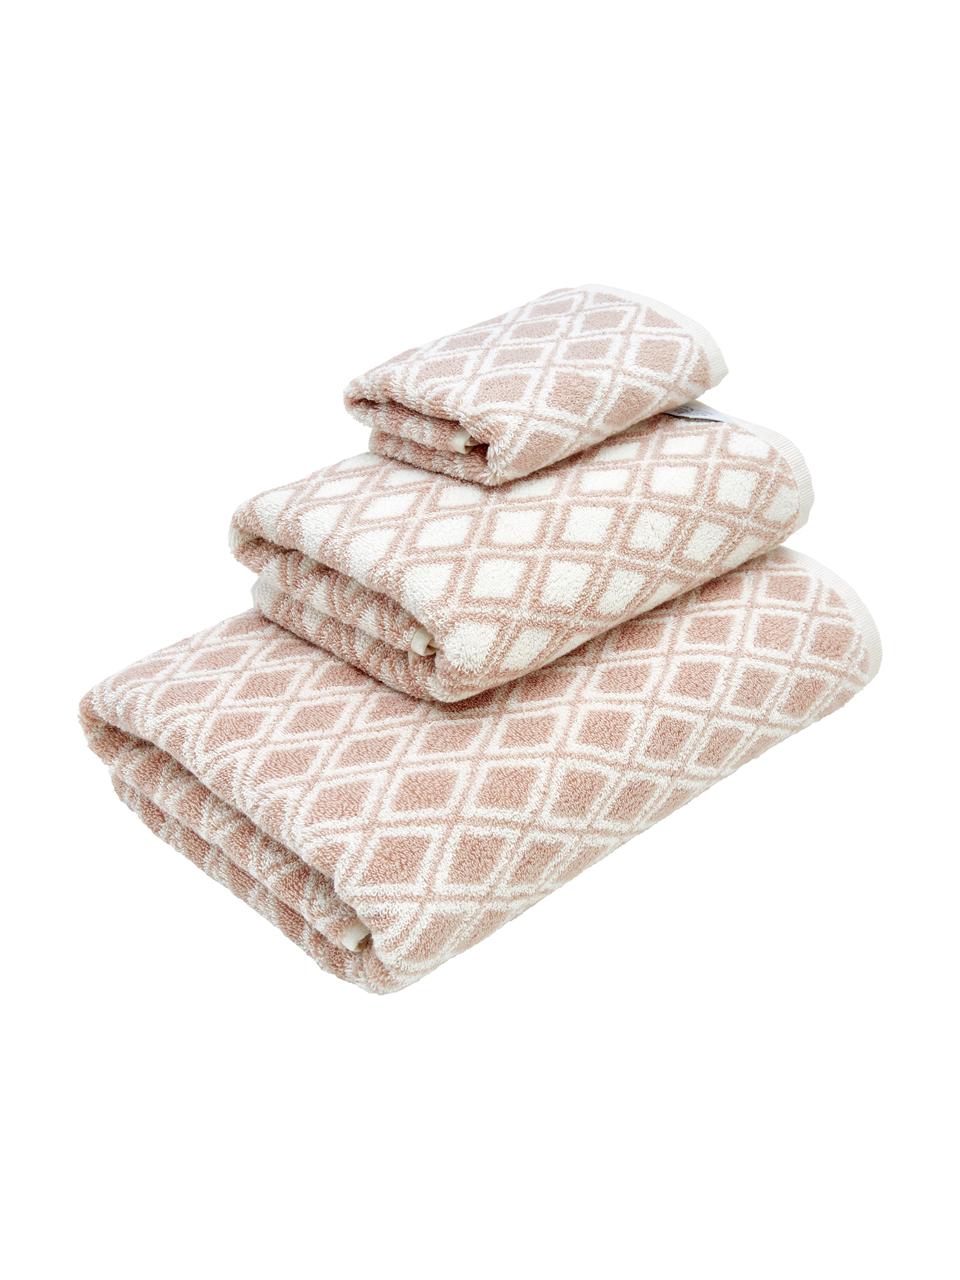 Dubbelzijdige handdoekenset Ava, 3-delig, 100% katoen, middelzware kwaliteit, 550 g/m², Roze, crèmewit, Set met verschillende formaten